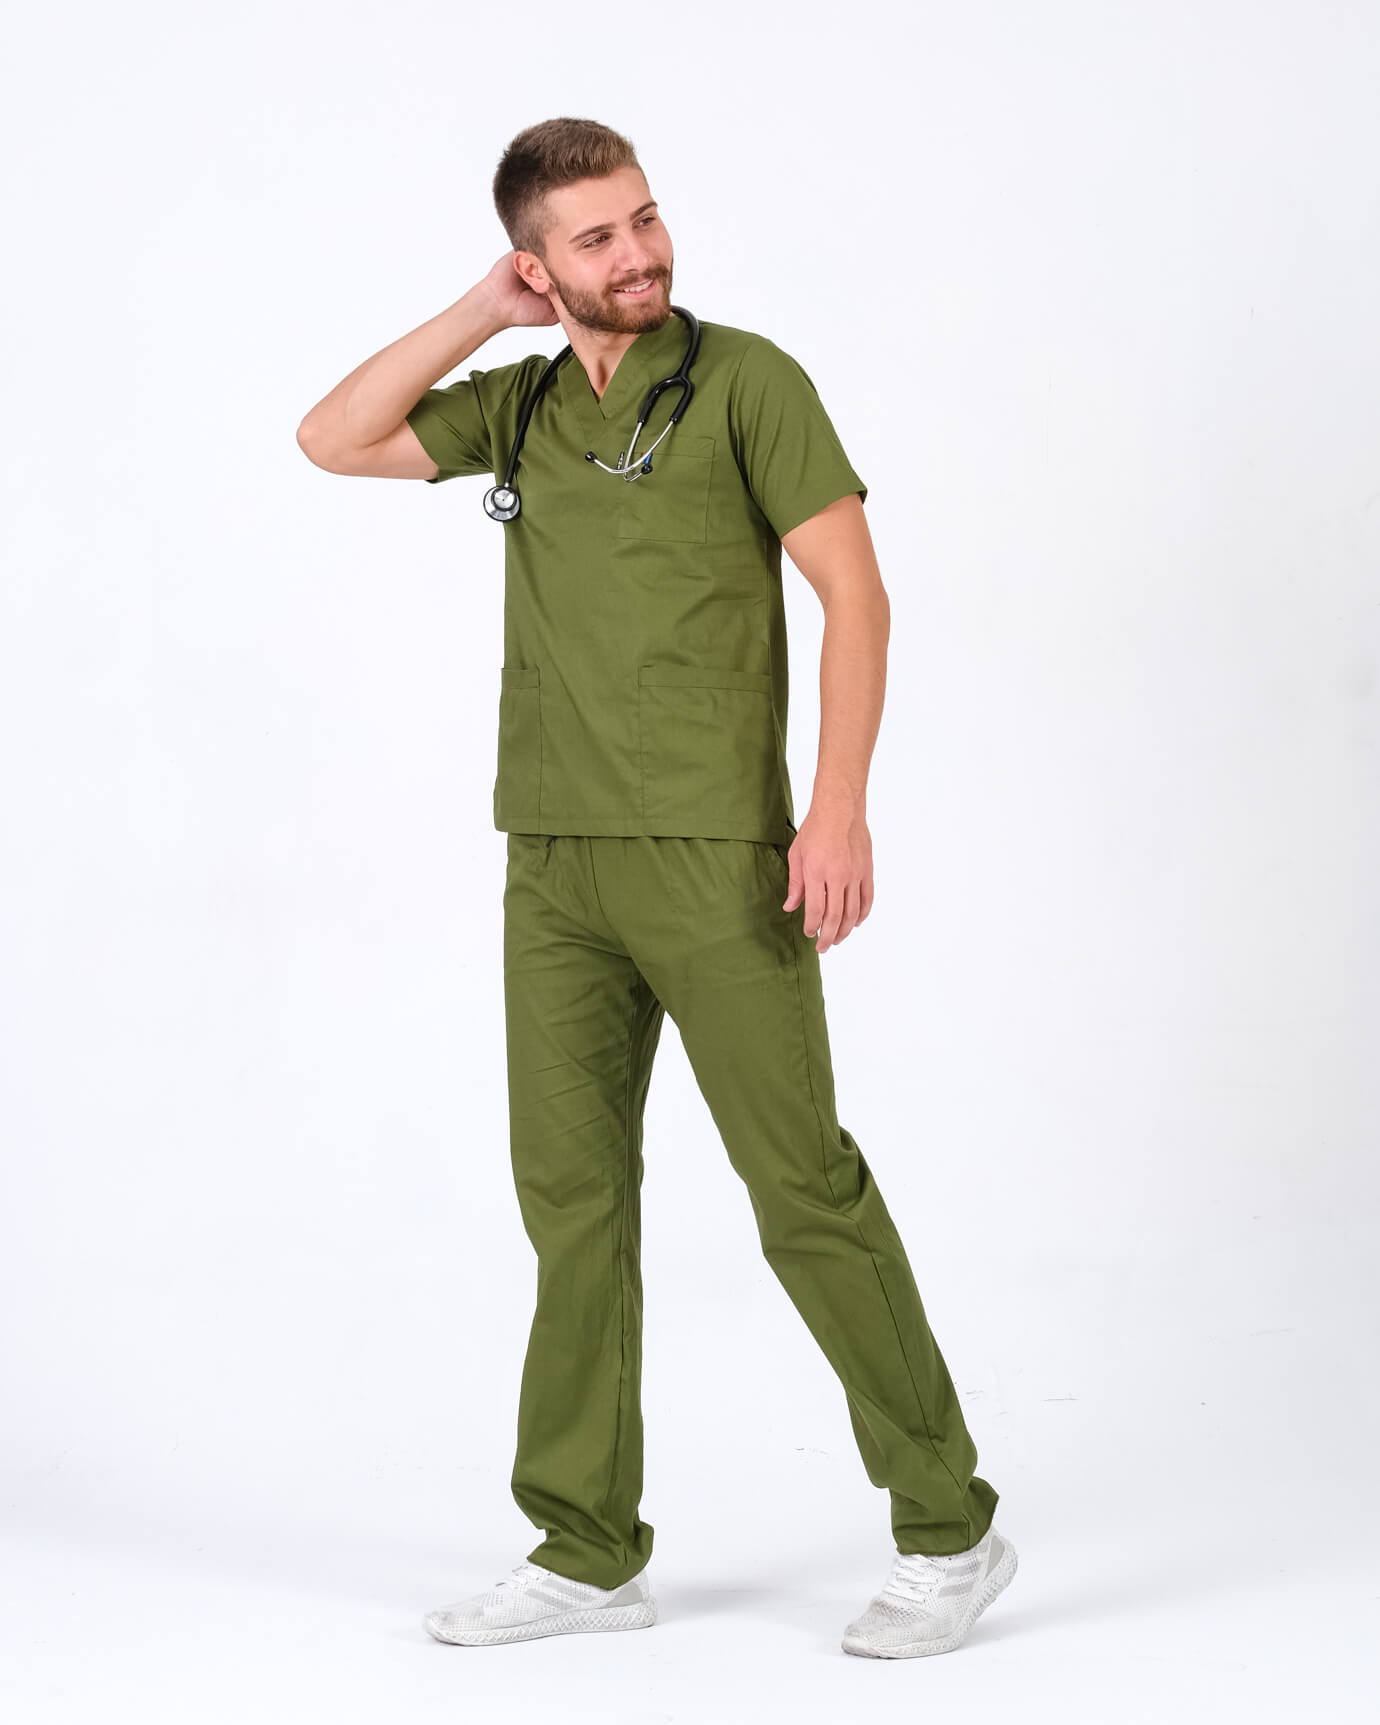 Erkek %100 Pamuk Likralı Takma Kol Asker Yeşili Doktor ve Hemşire Forması Scrubs Takımı